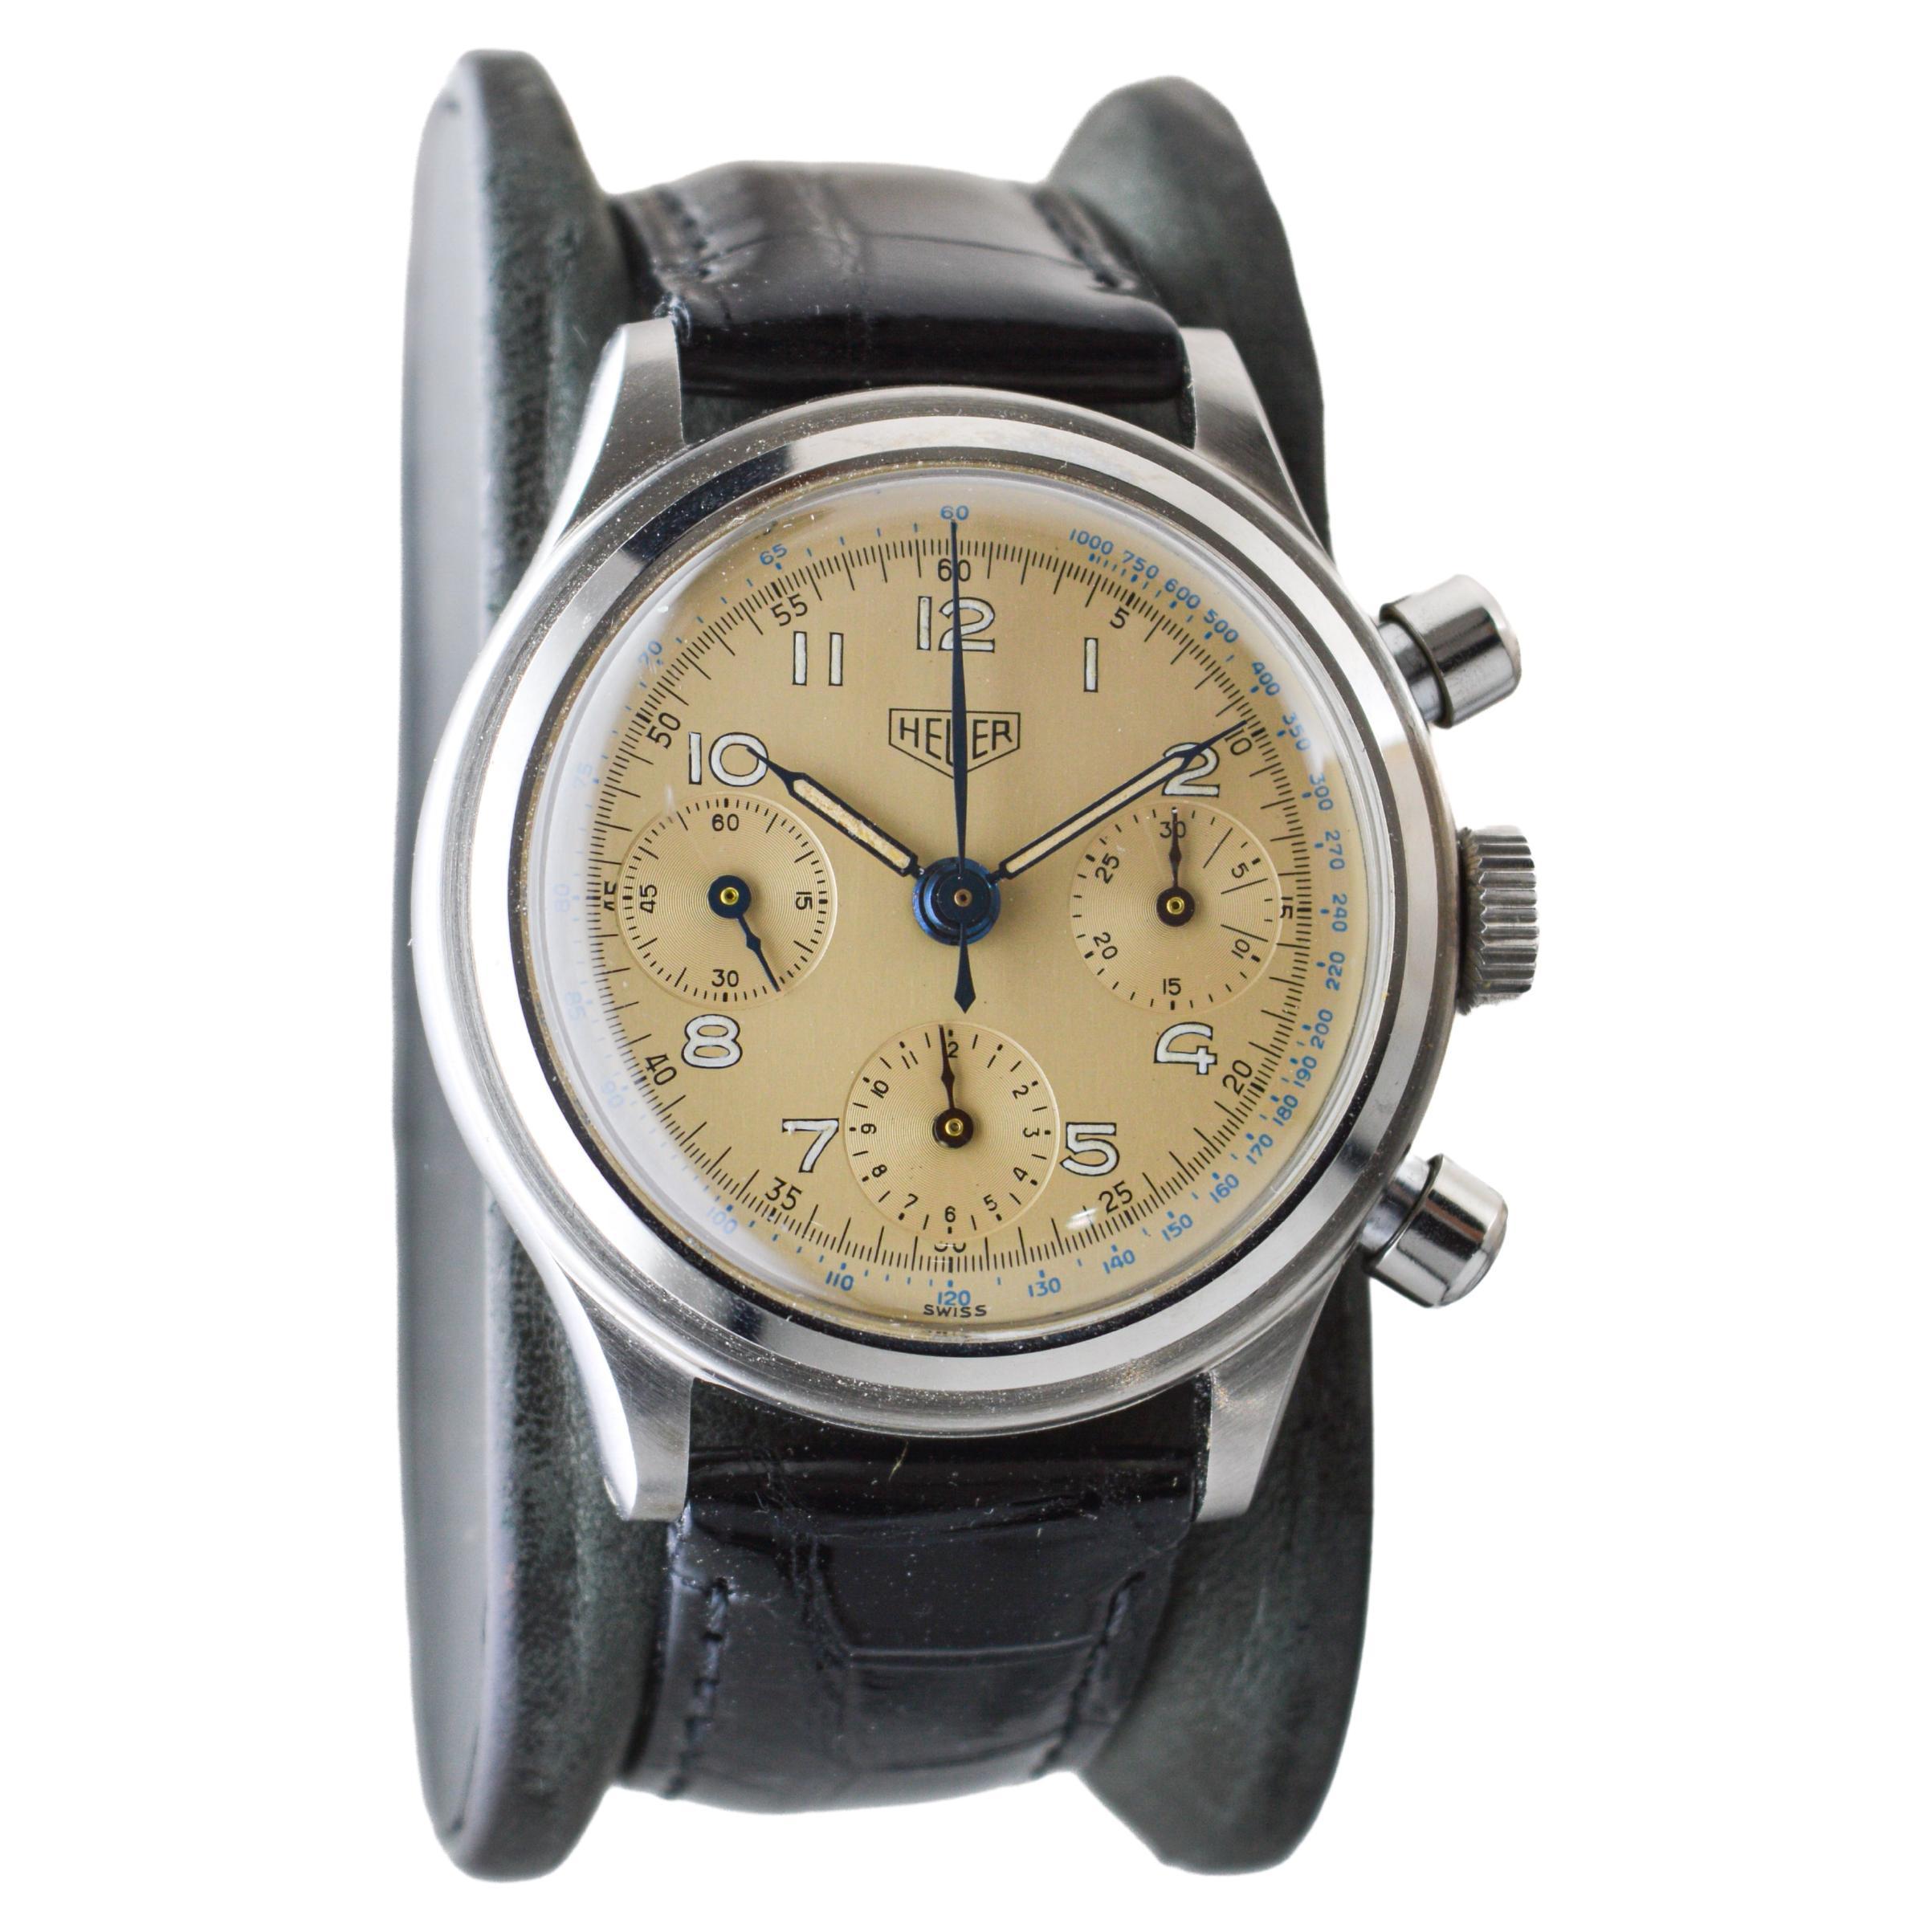 USINE / MAISON : Heuer Watch Company
STYLE / RÉFÉRENCE : Chronographe à trois registres
METAL / MATERIAL : Acier inoxydable 
DIMENSIONS : Longueur 43mm X Diamètre 37mm
CIRCA : années 1950
MOUVEMENT / CALIBRE : Remontage manuel / 17 Jewell / Calibre